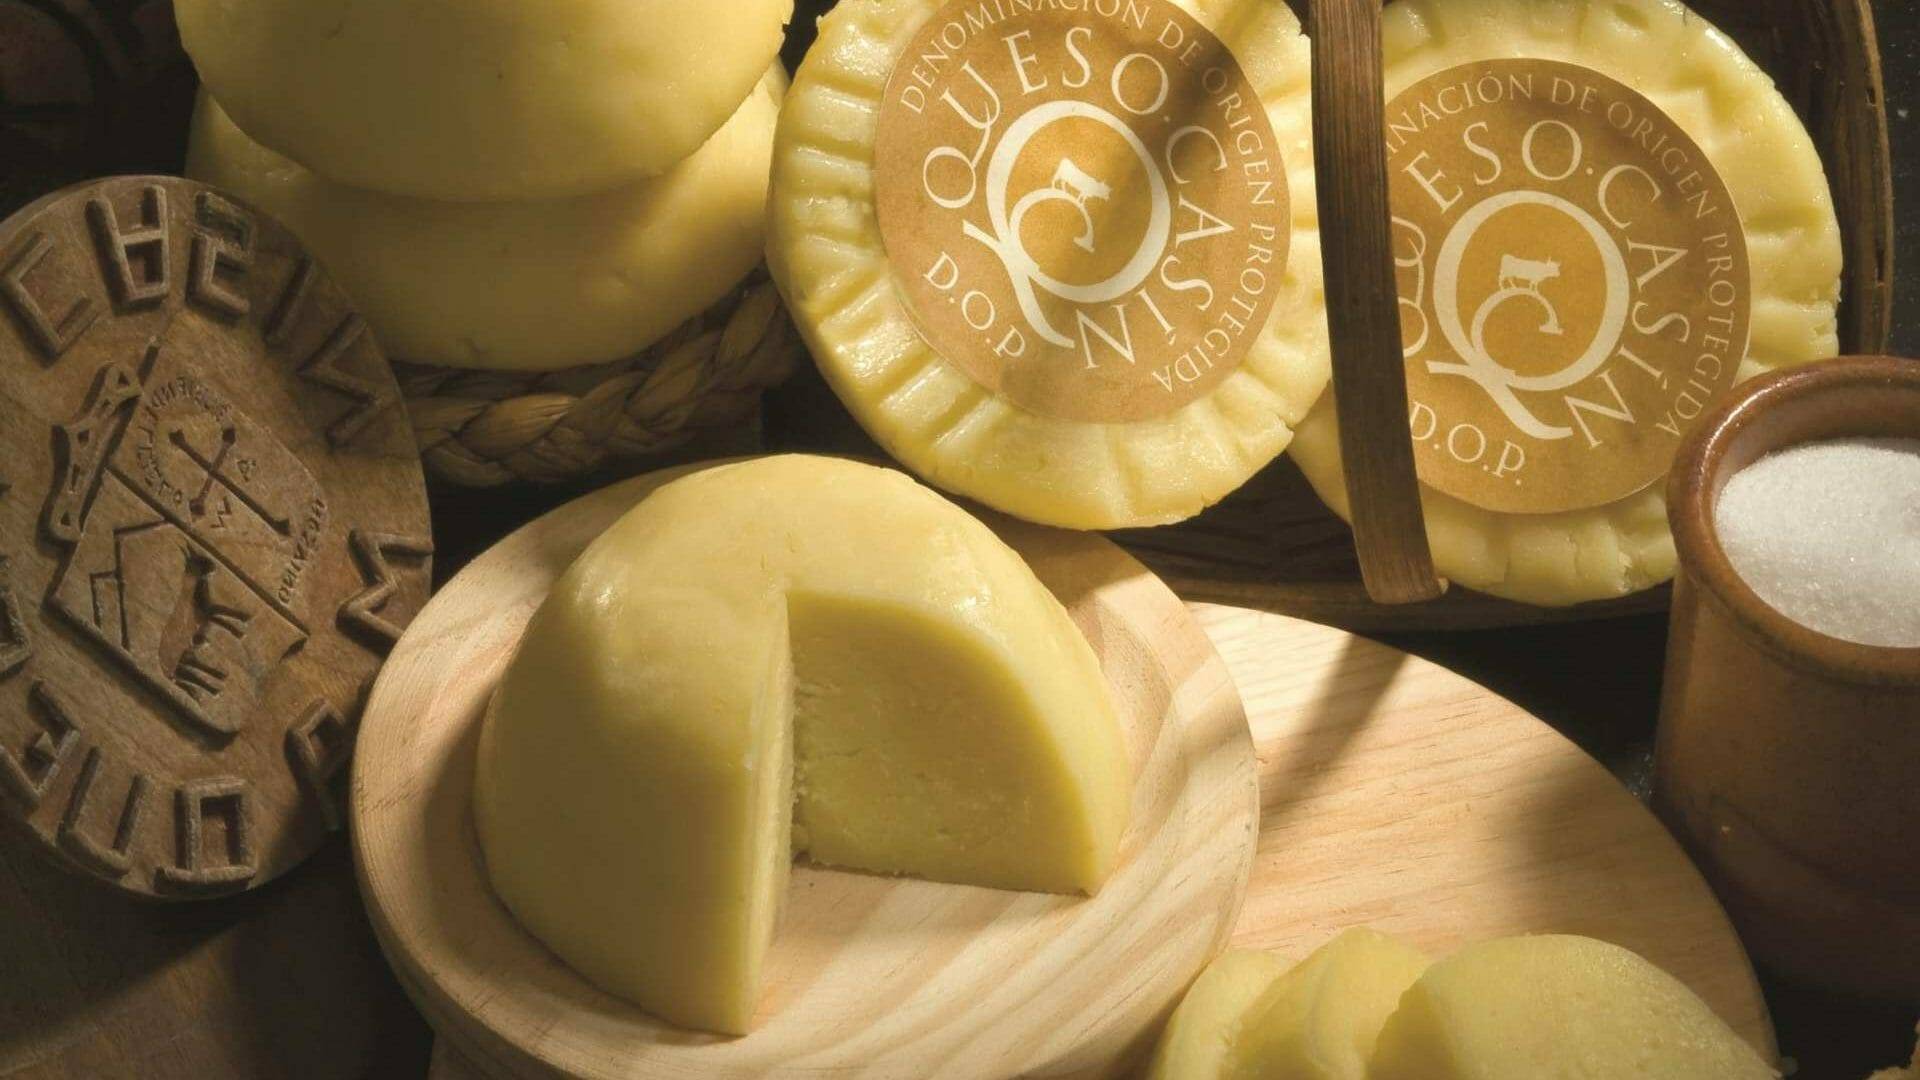 El queso Casín DOP es pura tradición y artesanía y se precia de ser el más antiguo del Principado de Asturias. © José Suárez